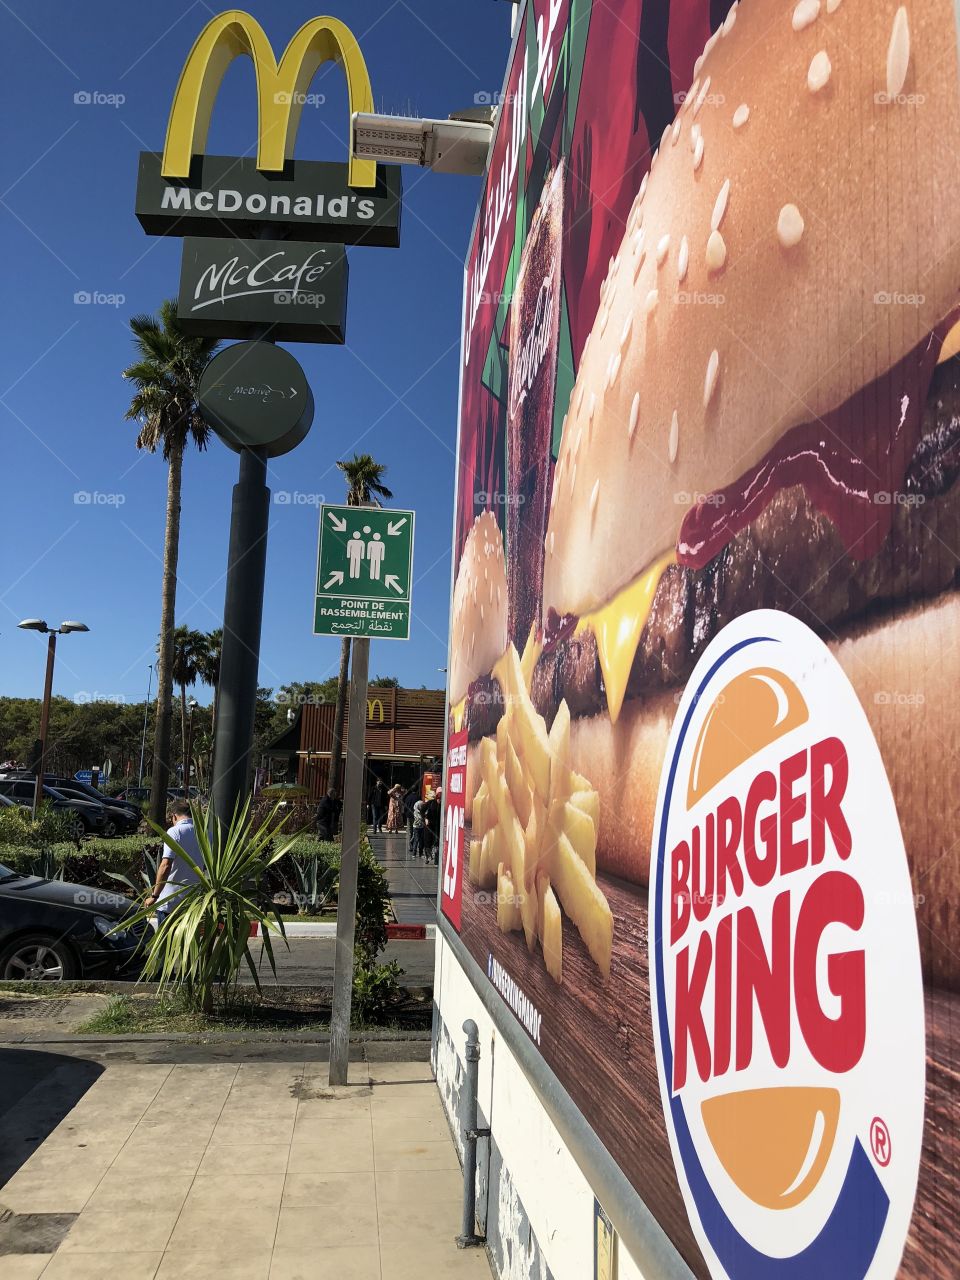 Burger king or mcdonald's